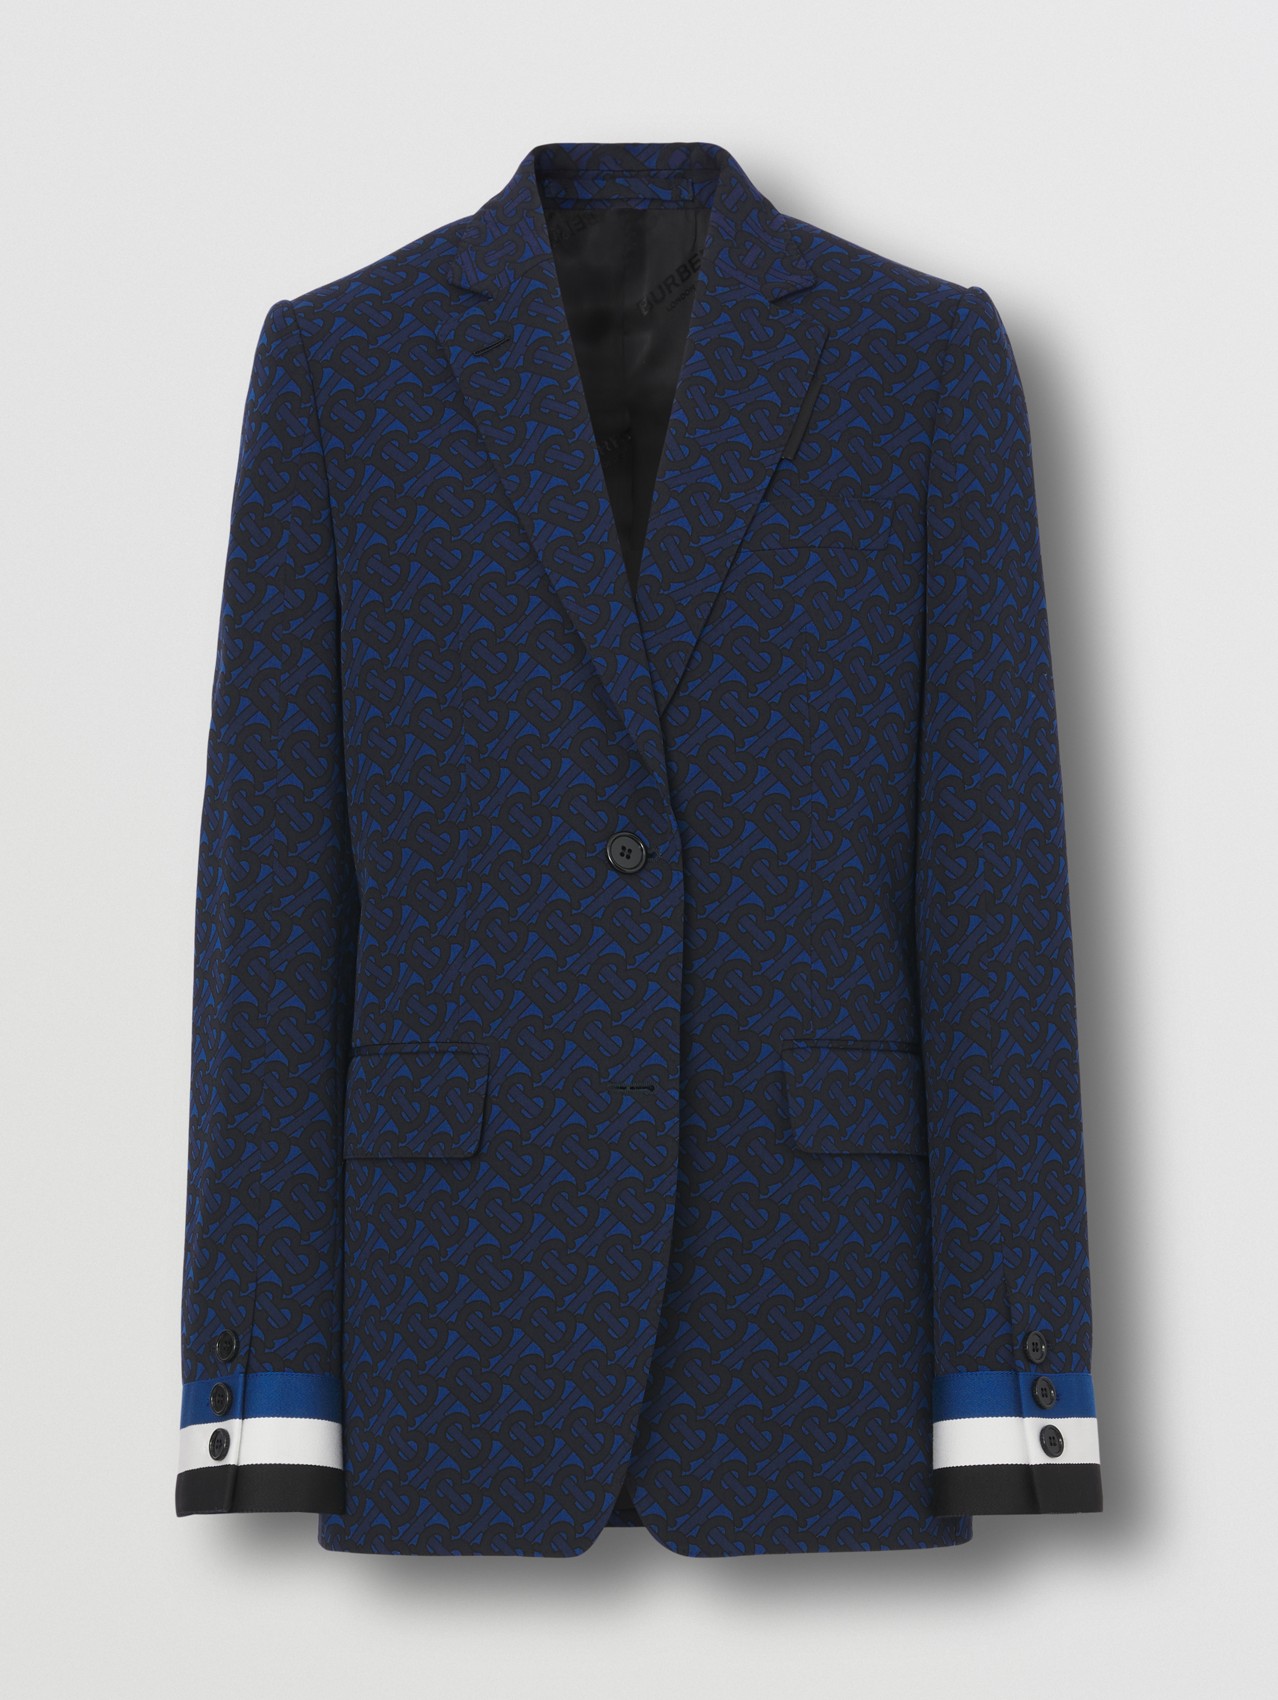 Monogram Print Wool Blend Tailored Jacket in Deep Royal Blue